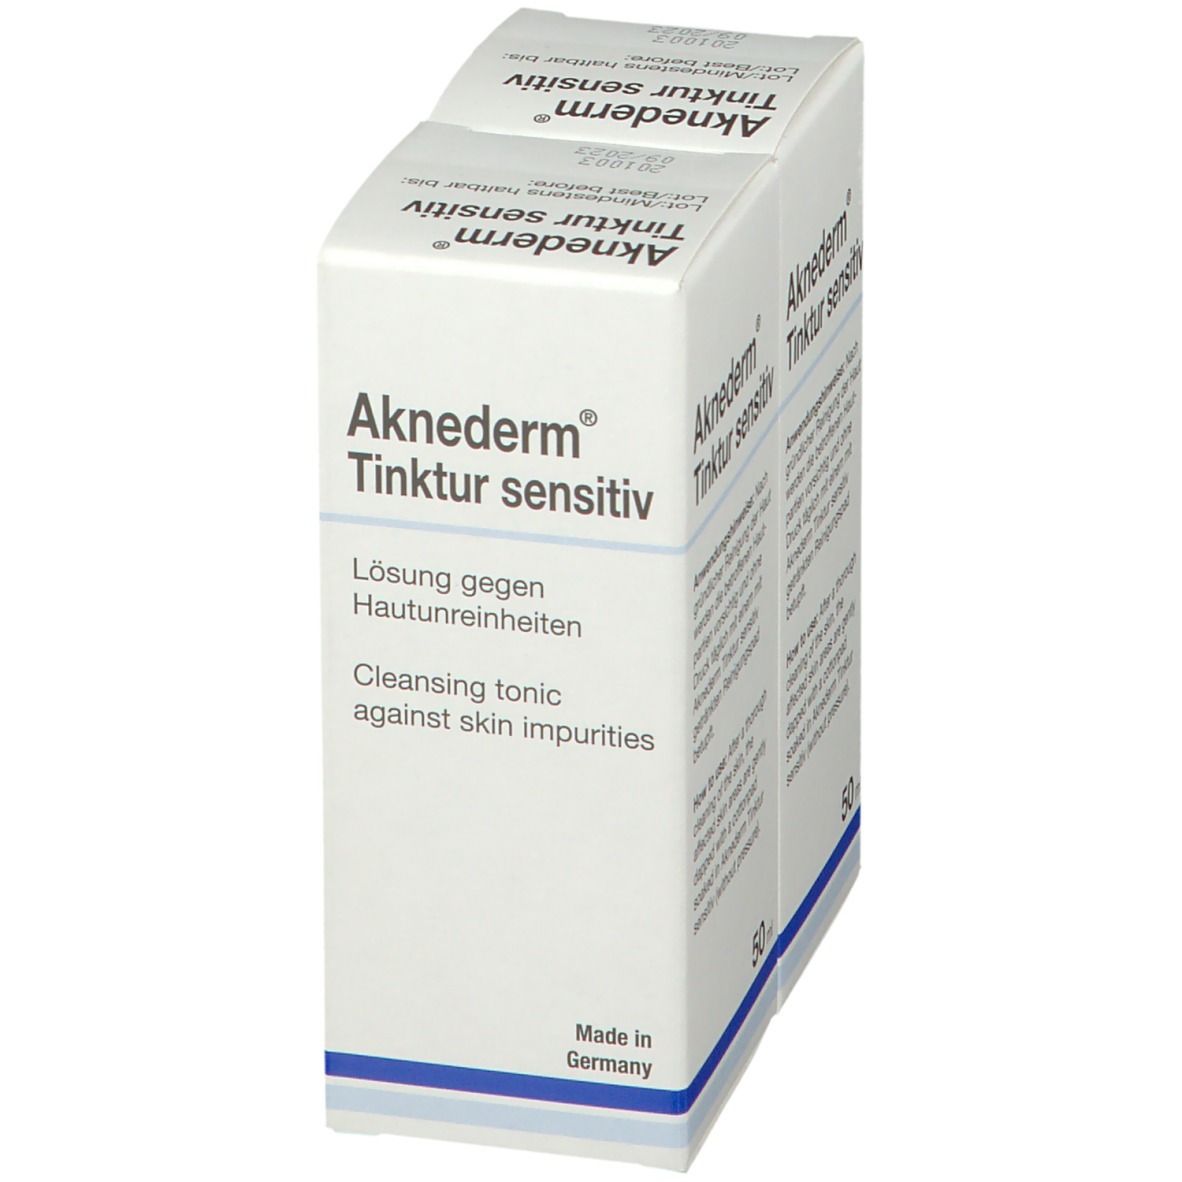 Aknederm® Tinktur sensitiv